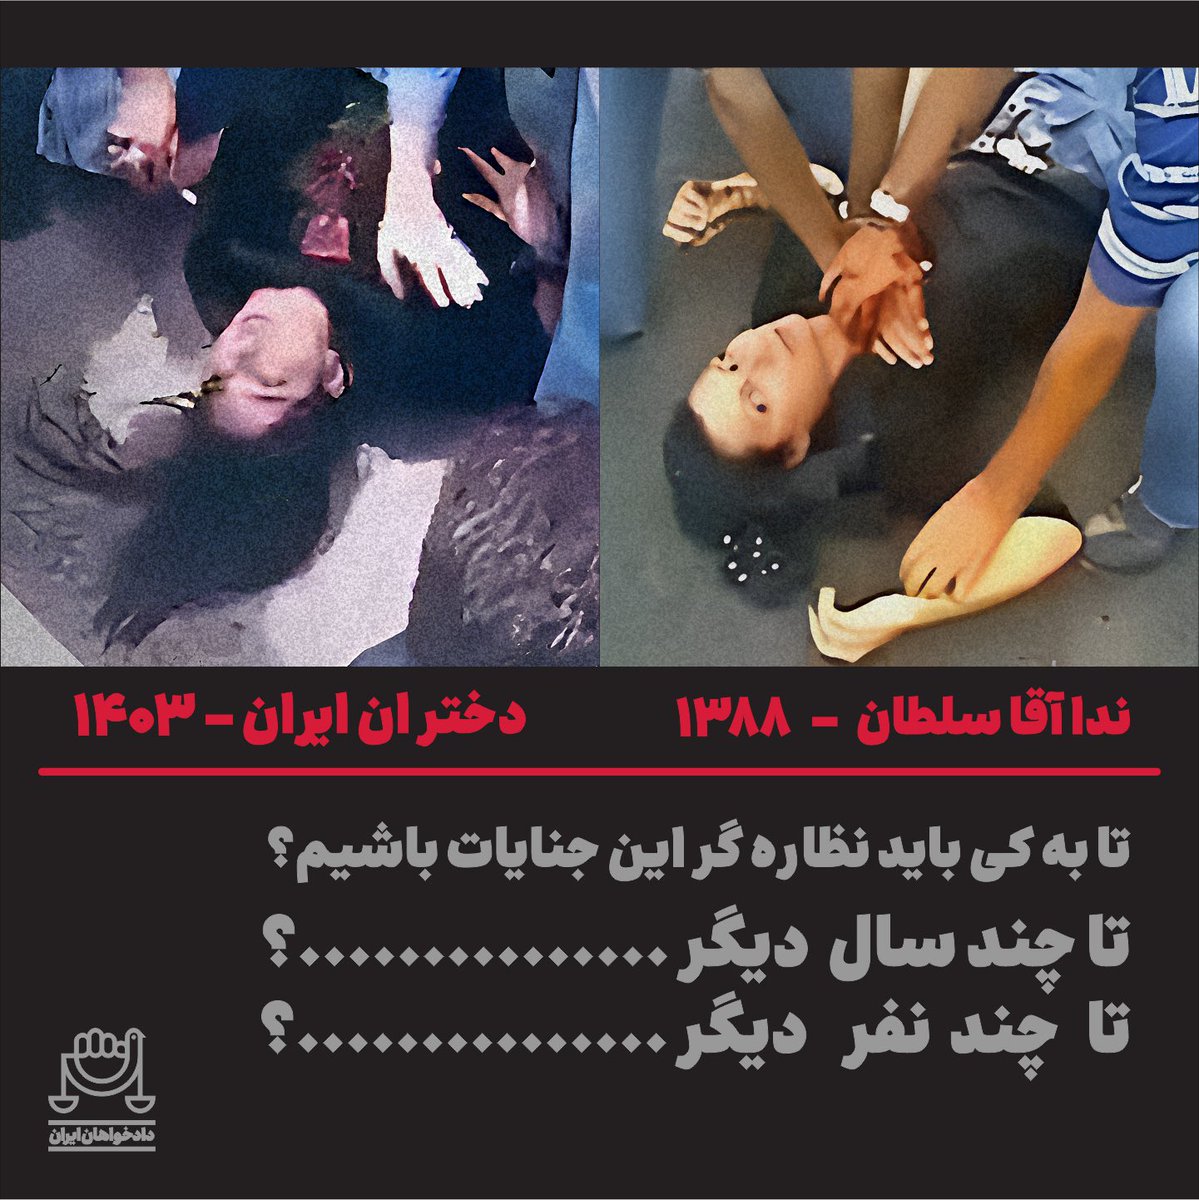 شباهت این دو عکس وحشتناک است! تا کی این تاریخ پر از جنایت تکرار شود!؟ #ندا_آقاسلطان #طرح_خون